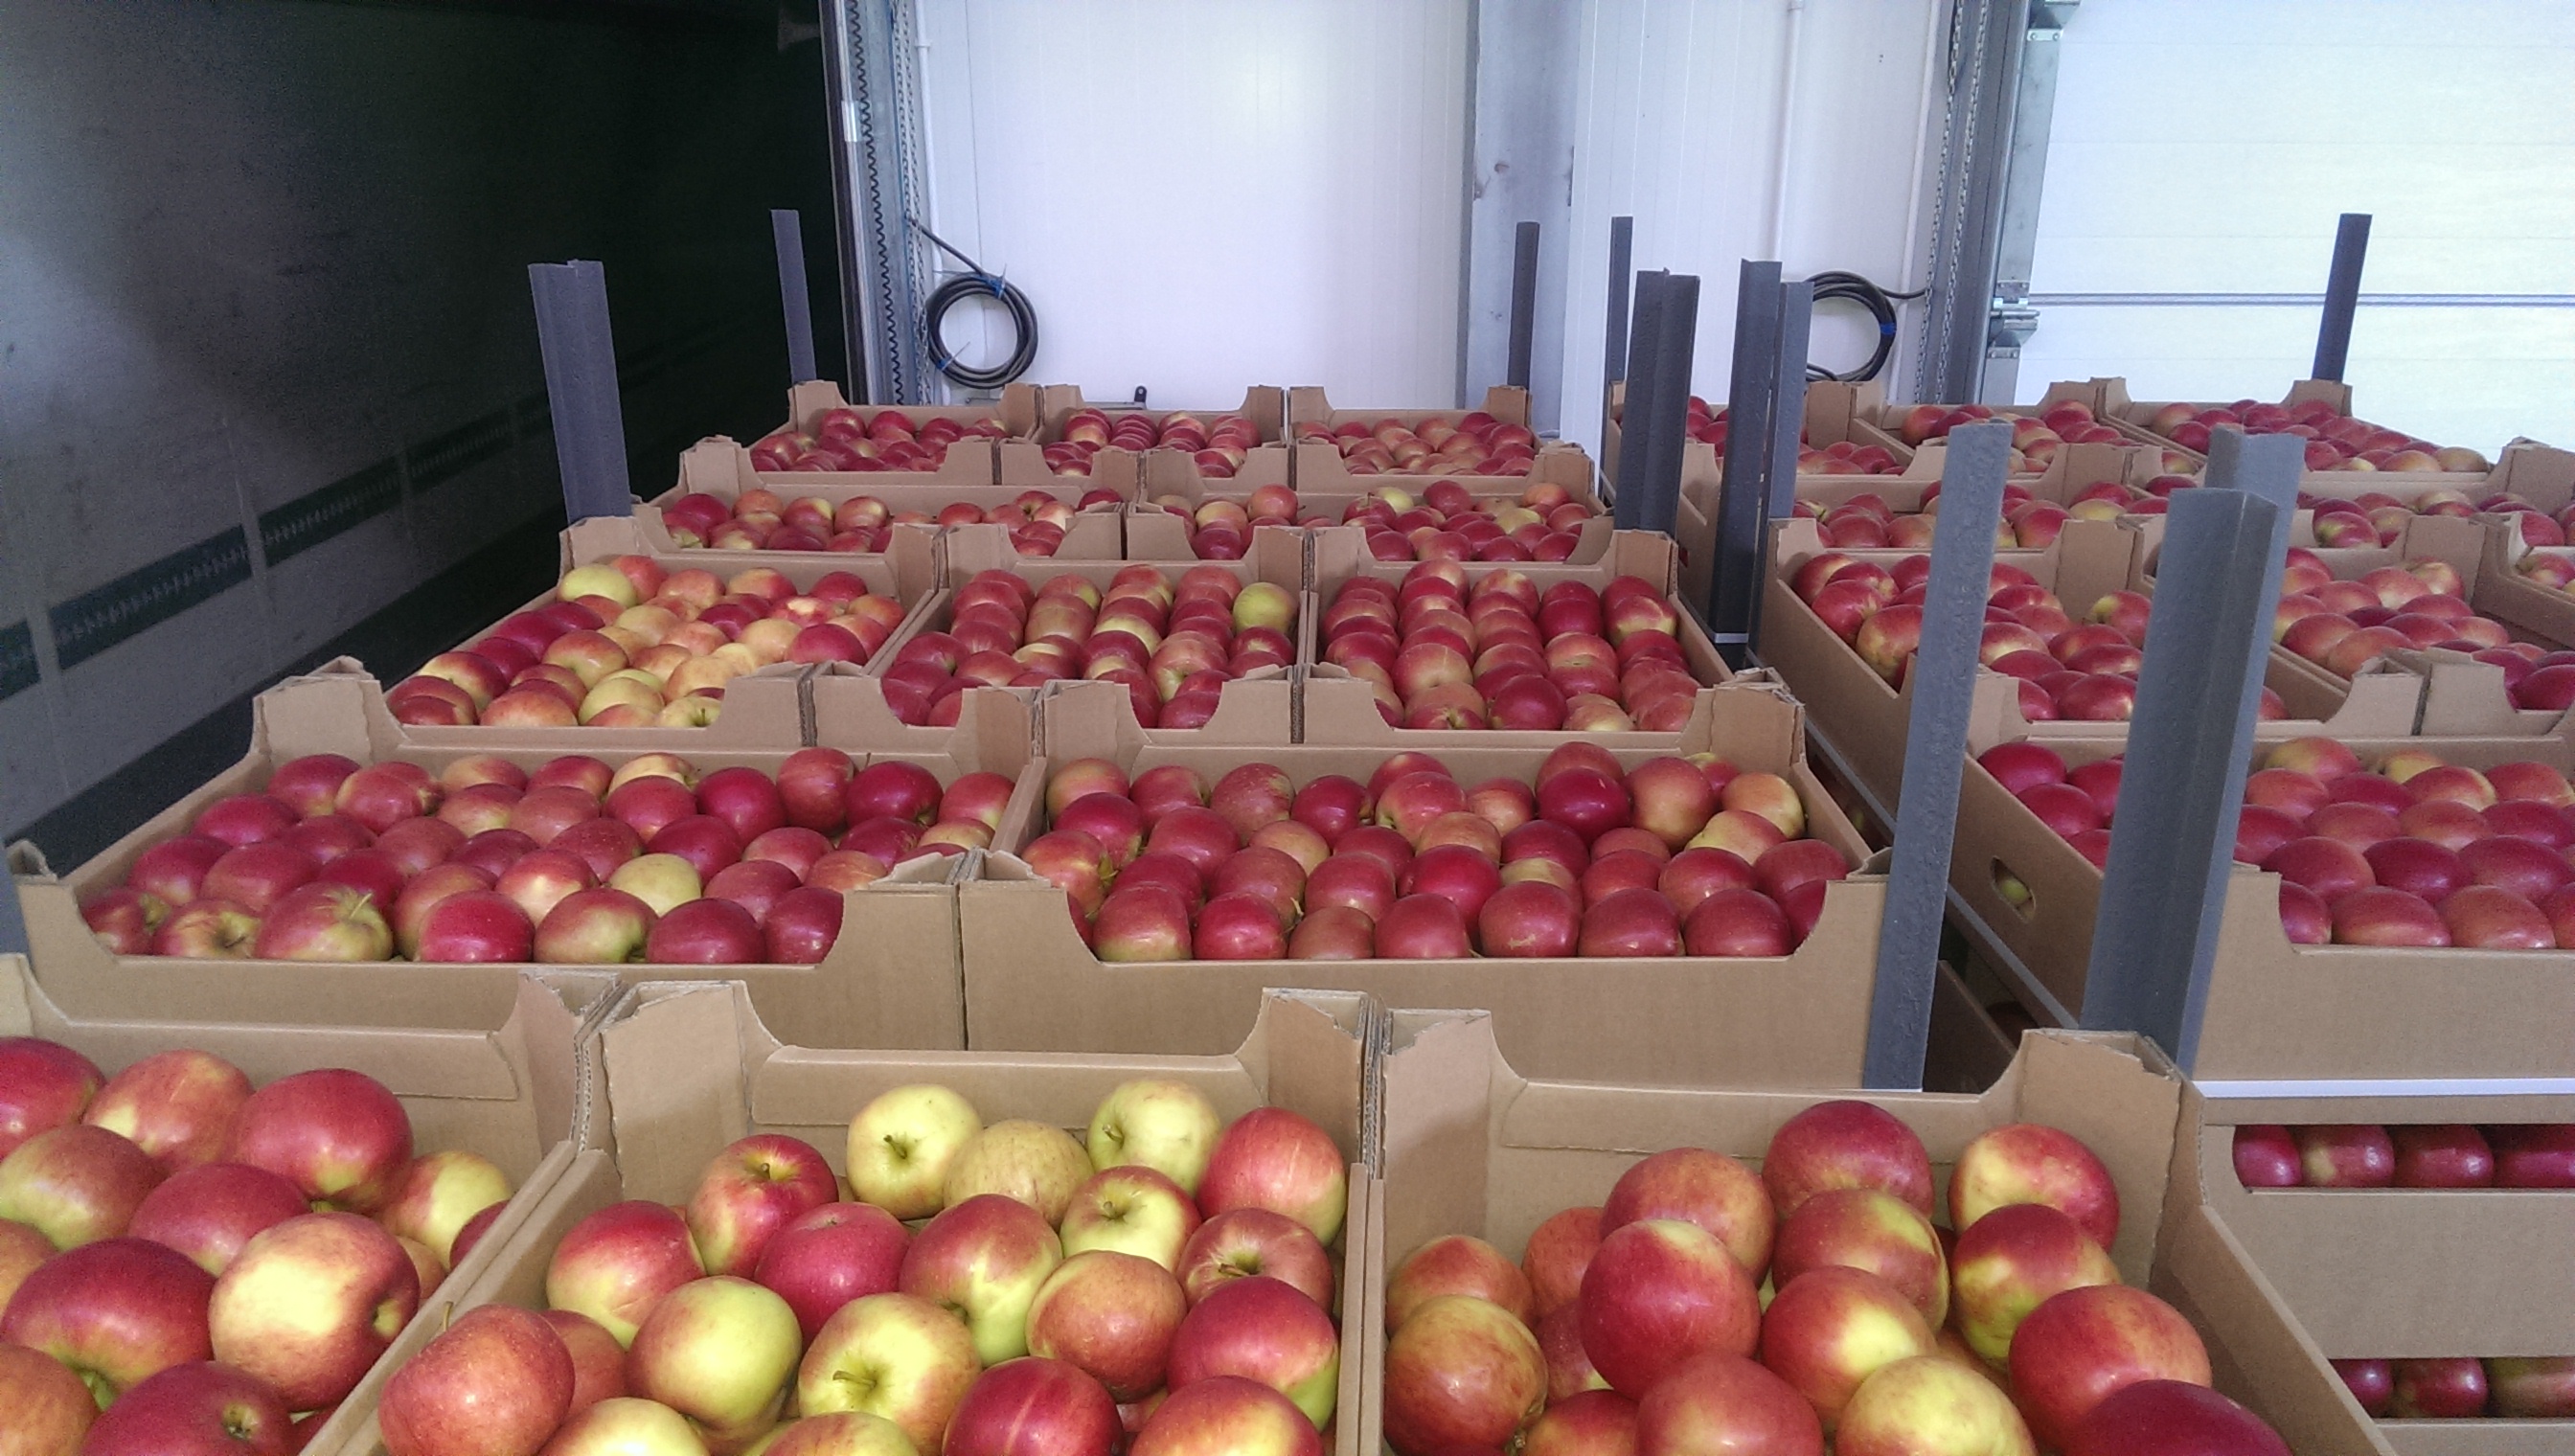 Купить яблоки от производителя. Перевоз яблок. Поставка яблок. Транспортировка яблок. Хранилище яблок.